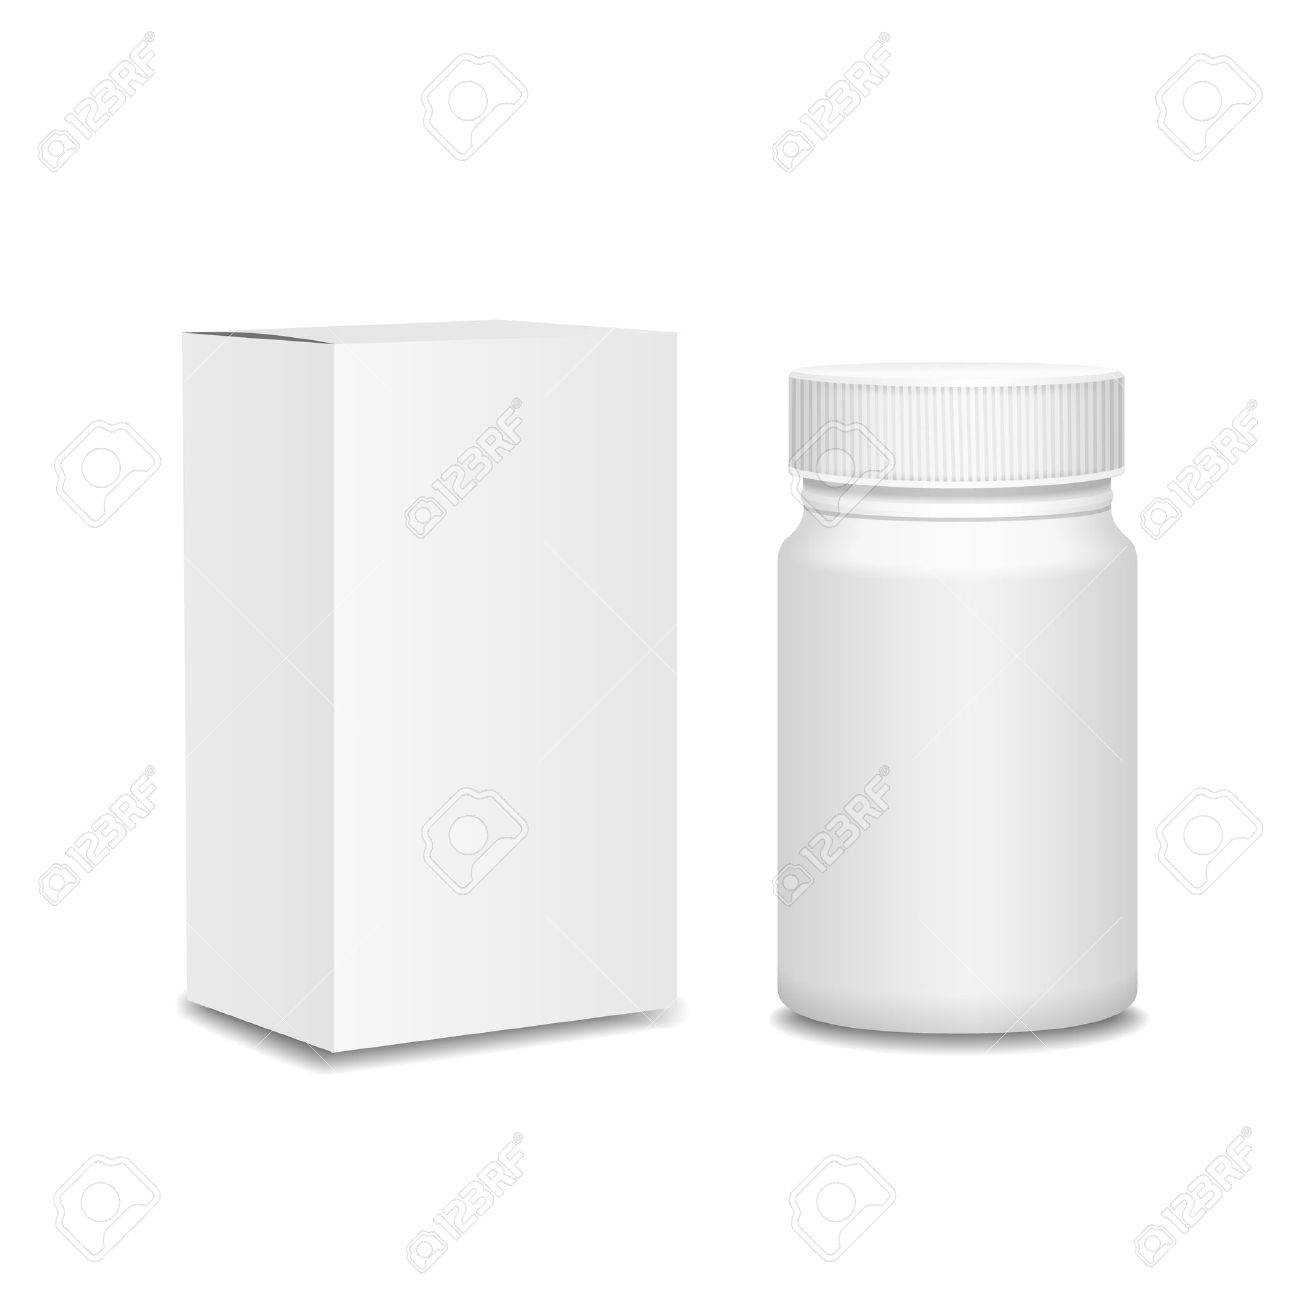 Blank Medicine Bottle And Cardboard Packaging, Vitamins, Examples.. Regarding Blank Packaging Templates